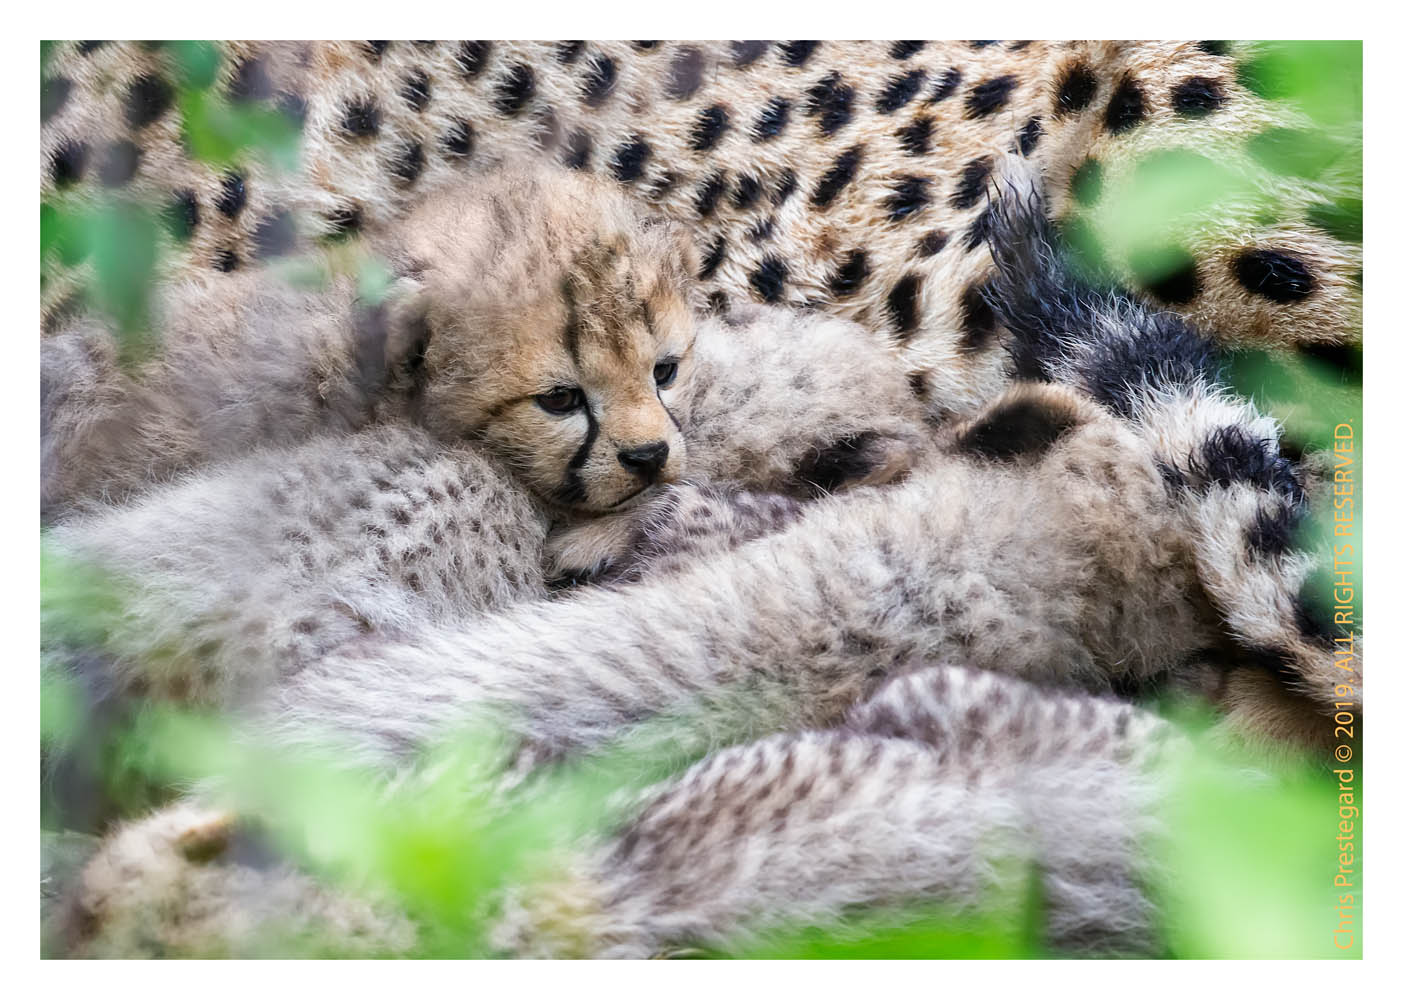 Cheetah cubs at Ndutu, Tanzania Feb. 2019